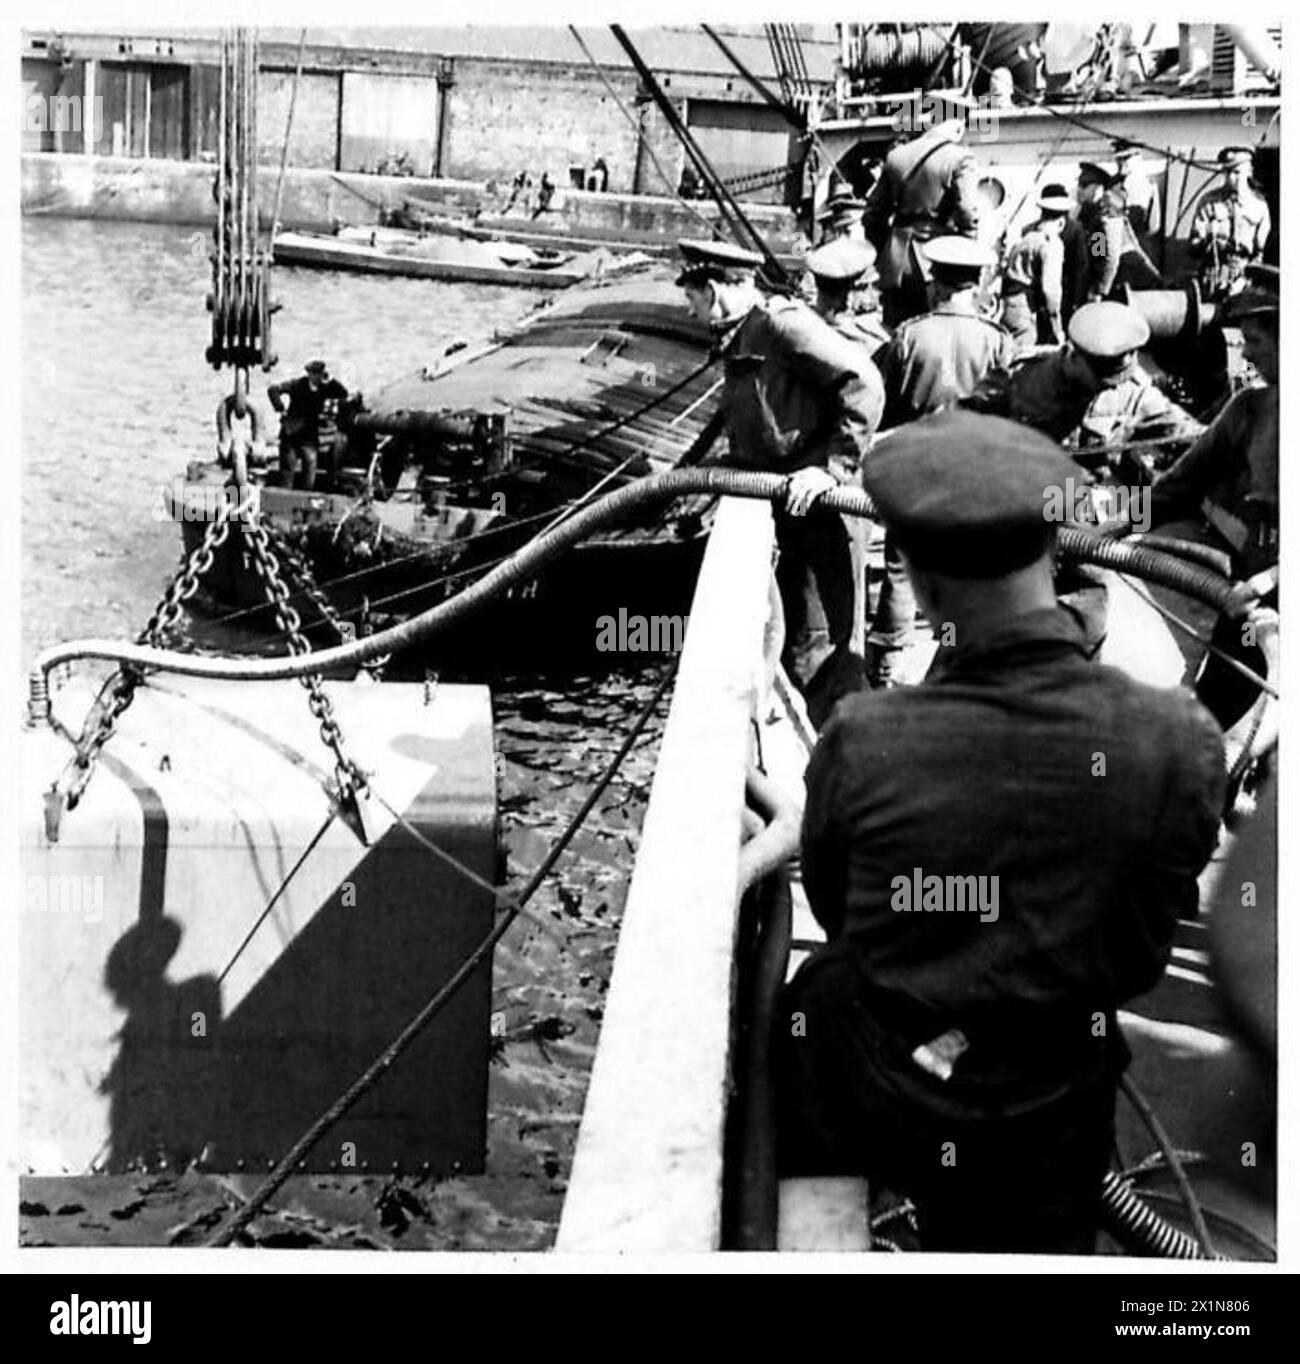 REPARATURSCHIFF MIT KÖNIGLICHEN INGENIEUREN - die Tauchglocke wird von Männern der Royal Engineers, British Army, über der Schiffsseite abgesenkt Stockfoto